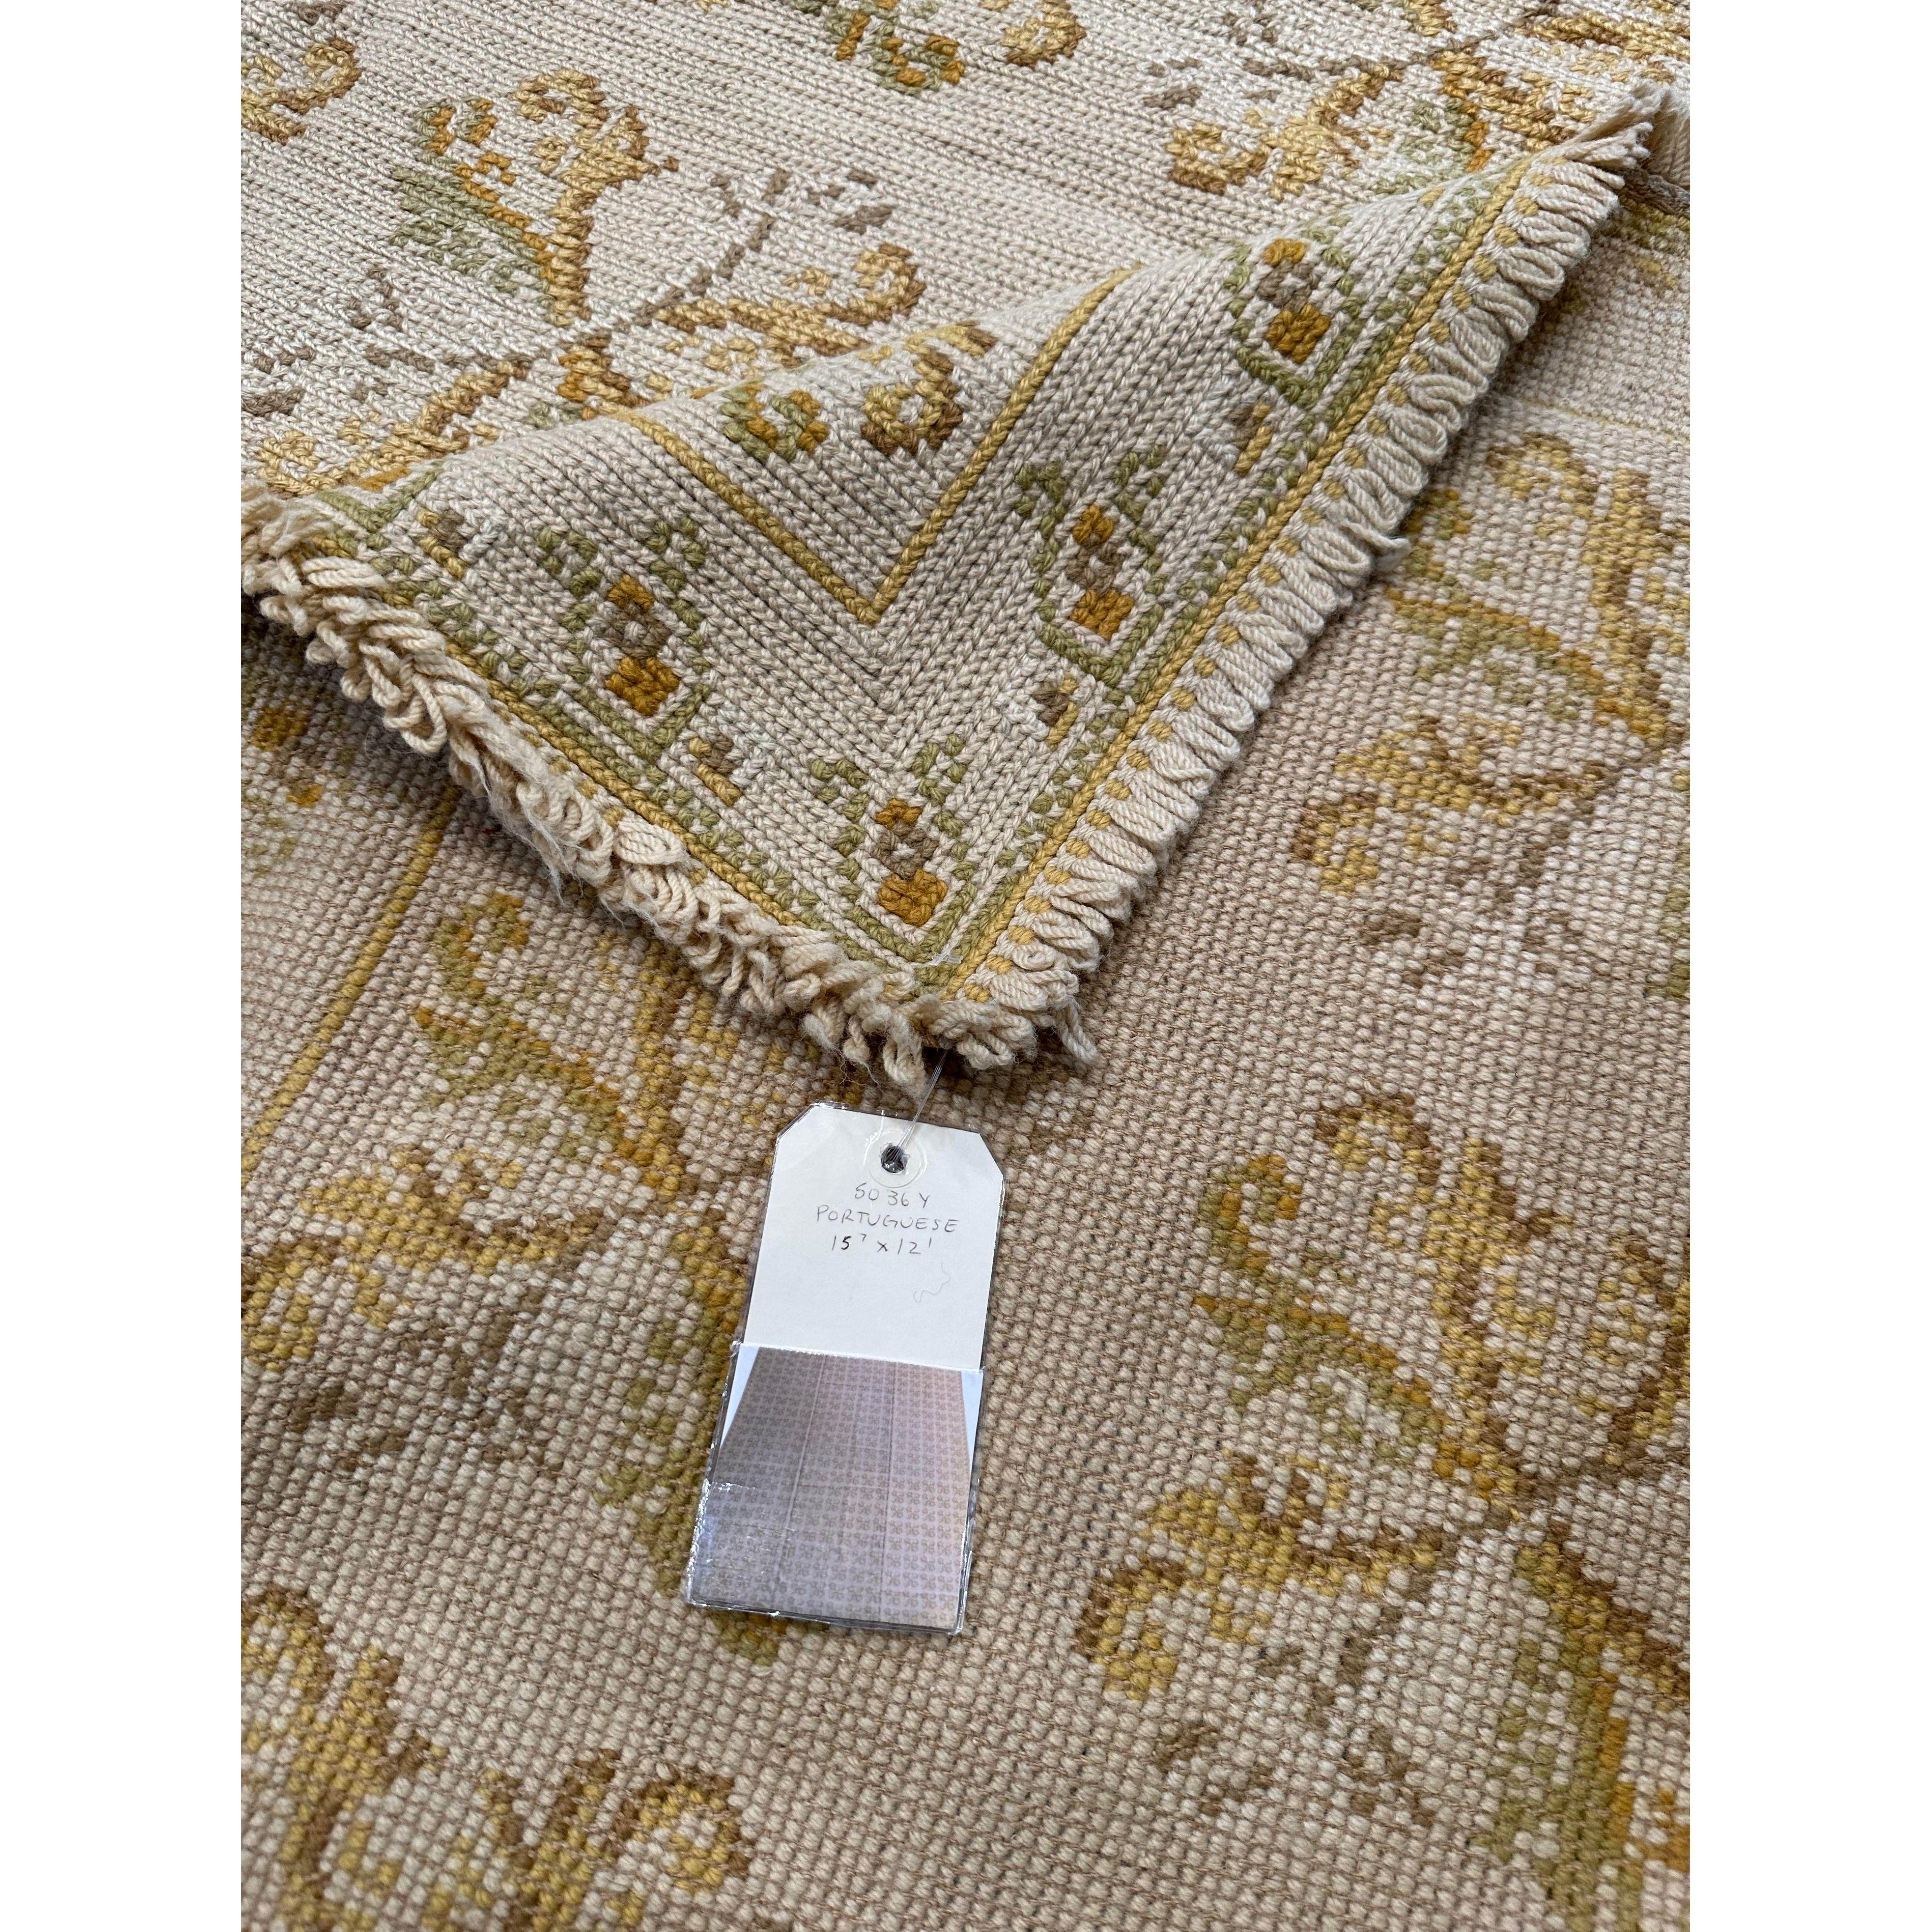 La durabilité de la tapisserie à l'aiguille permet de créer des tapis et des revêtements de sol. La tradition de la création de tapis à l'aiguille au Portugal a une histoire fascinante qui commence en 1492 avec la reine Isabelle d'Espagne. À la